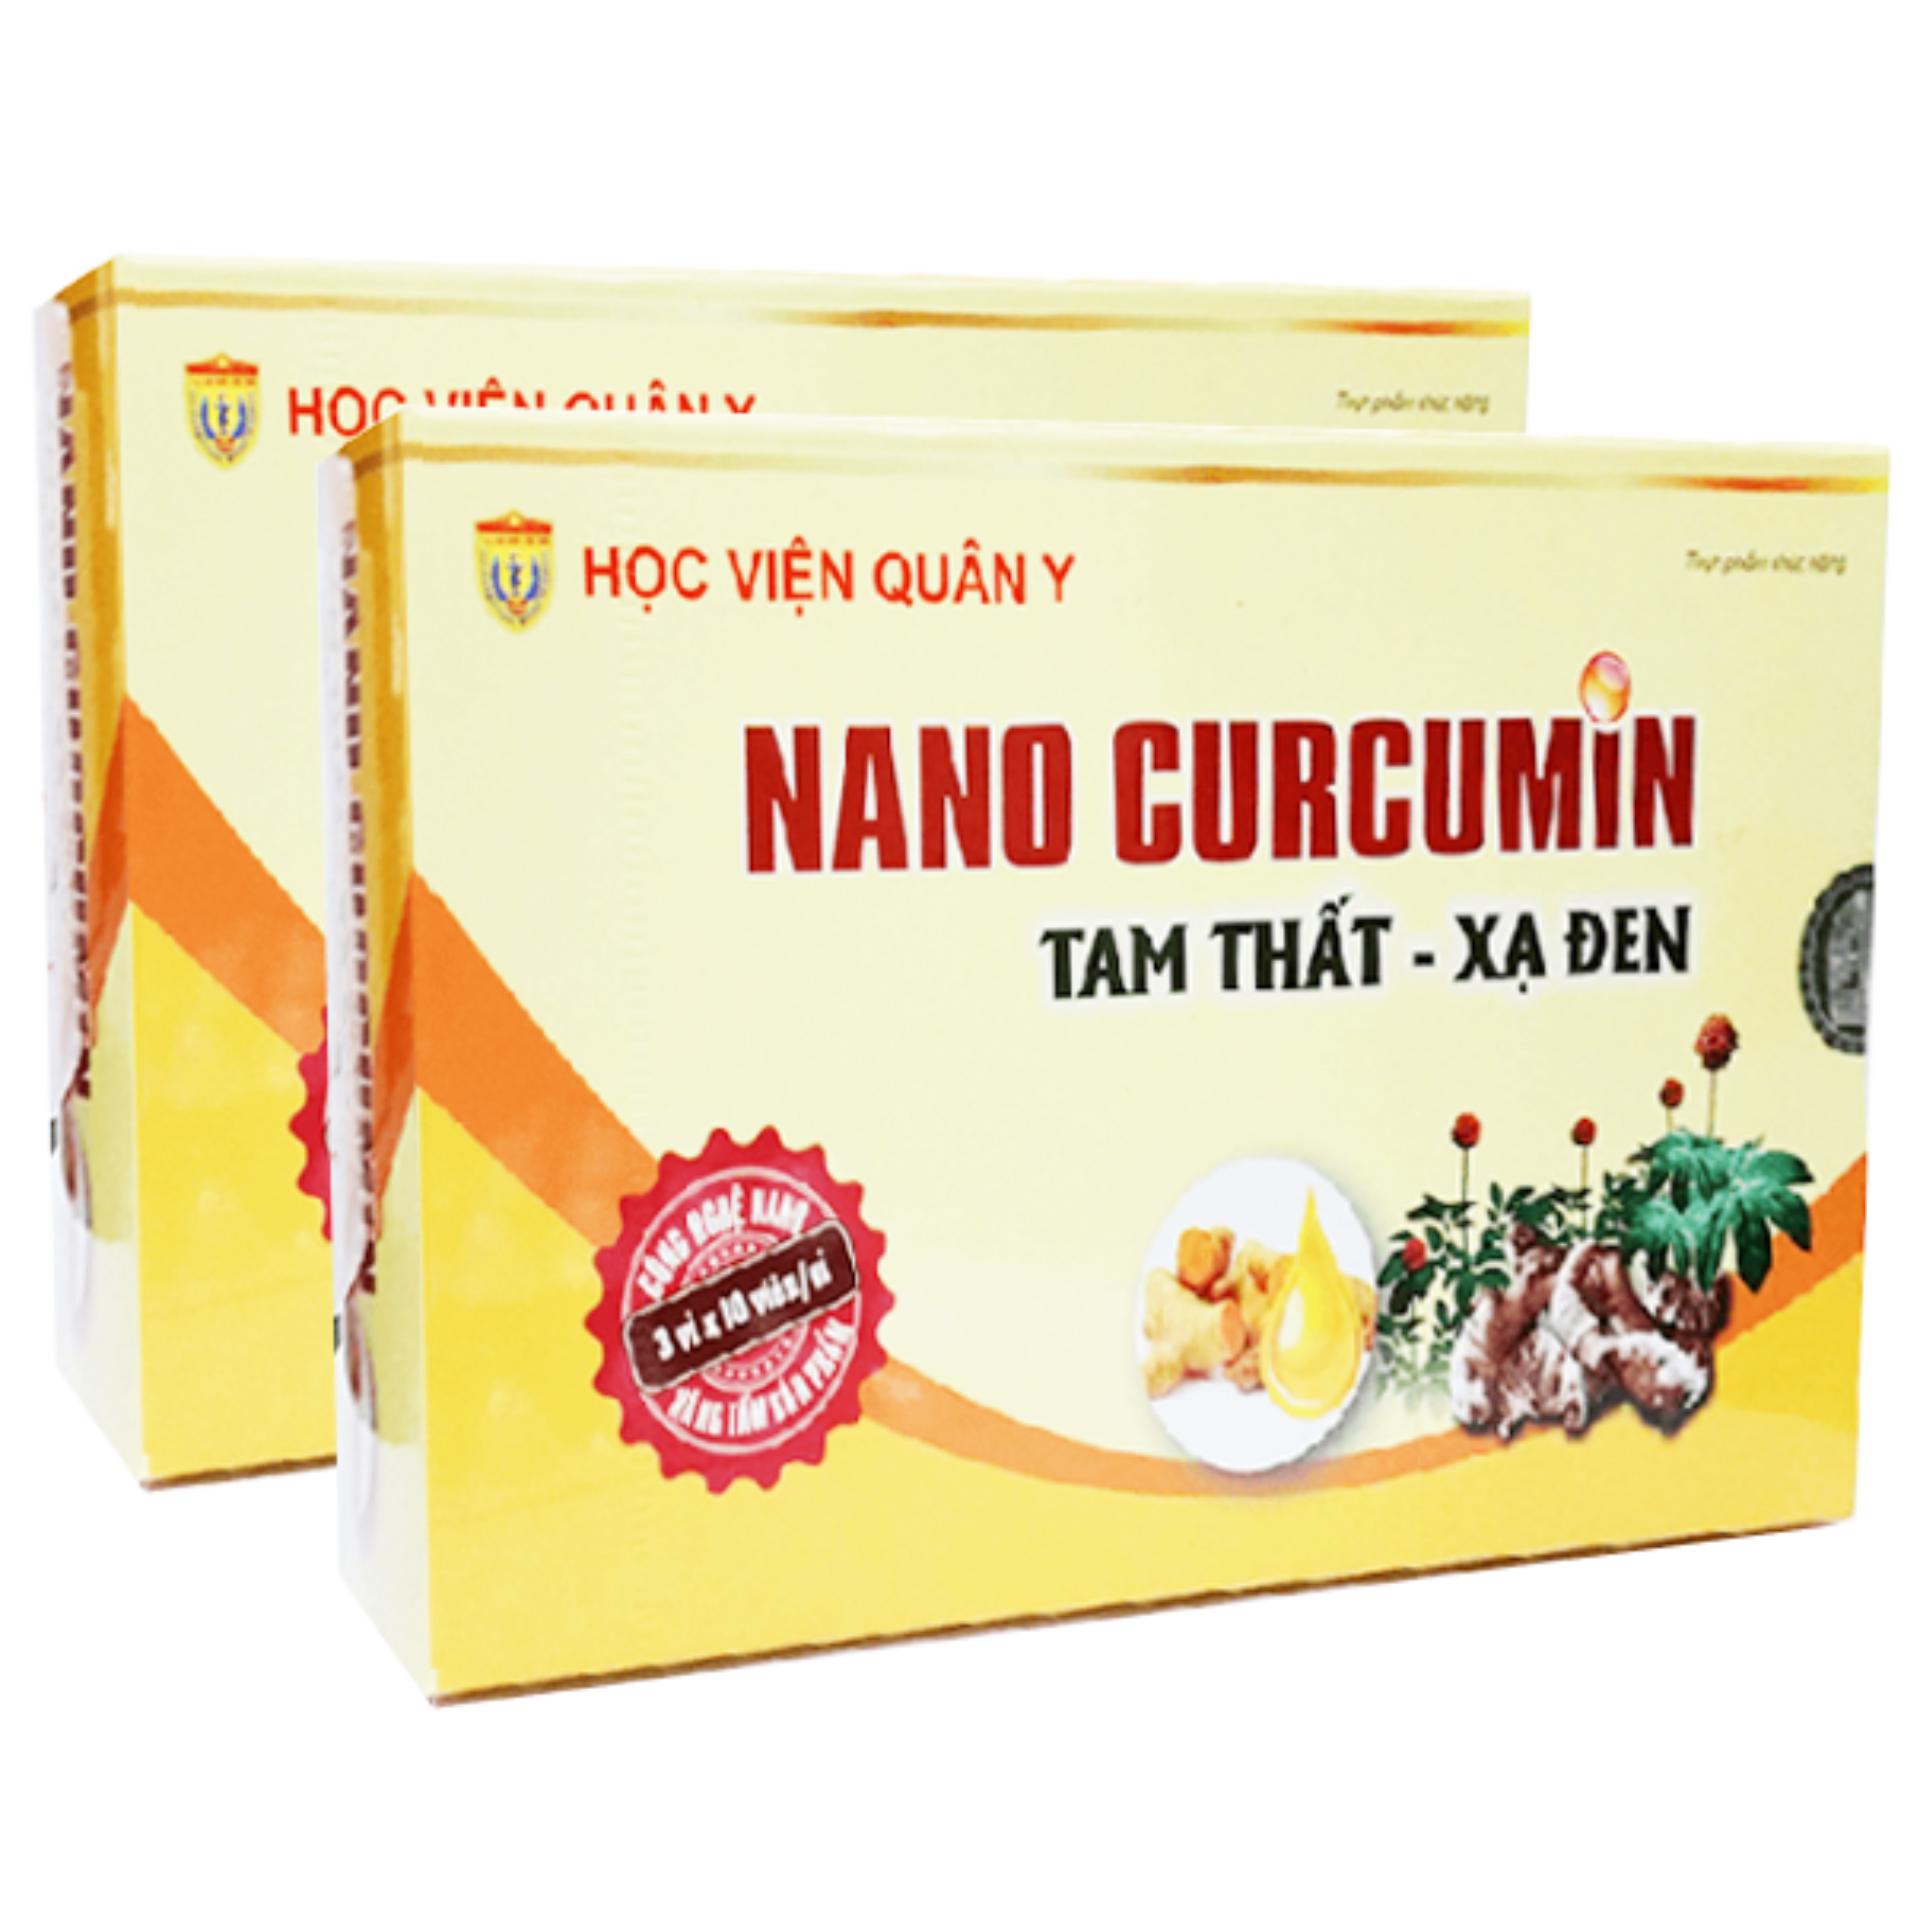 HCMBộ 2 hộp Nano Curcumin Tam Thất Xạ Đen HVQY